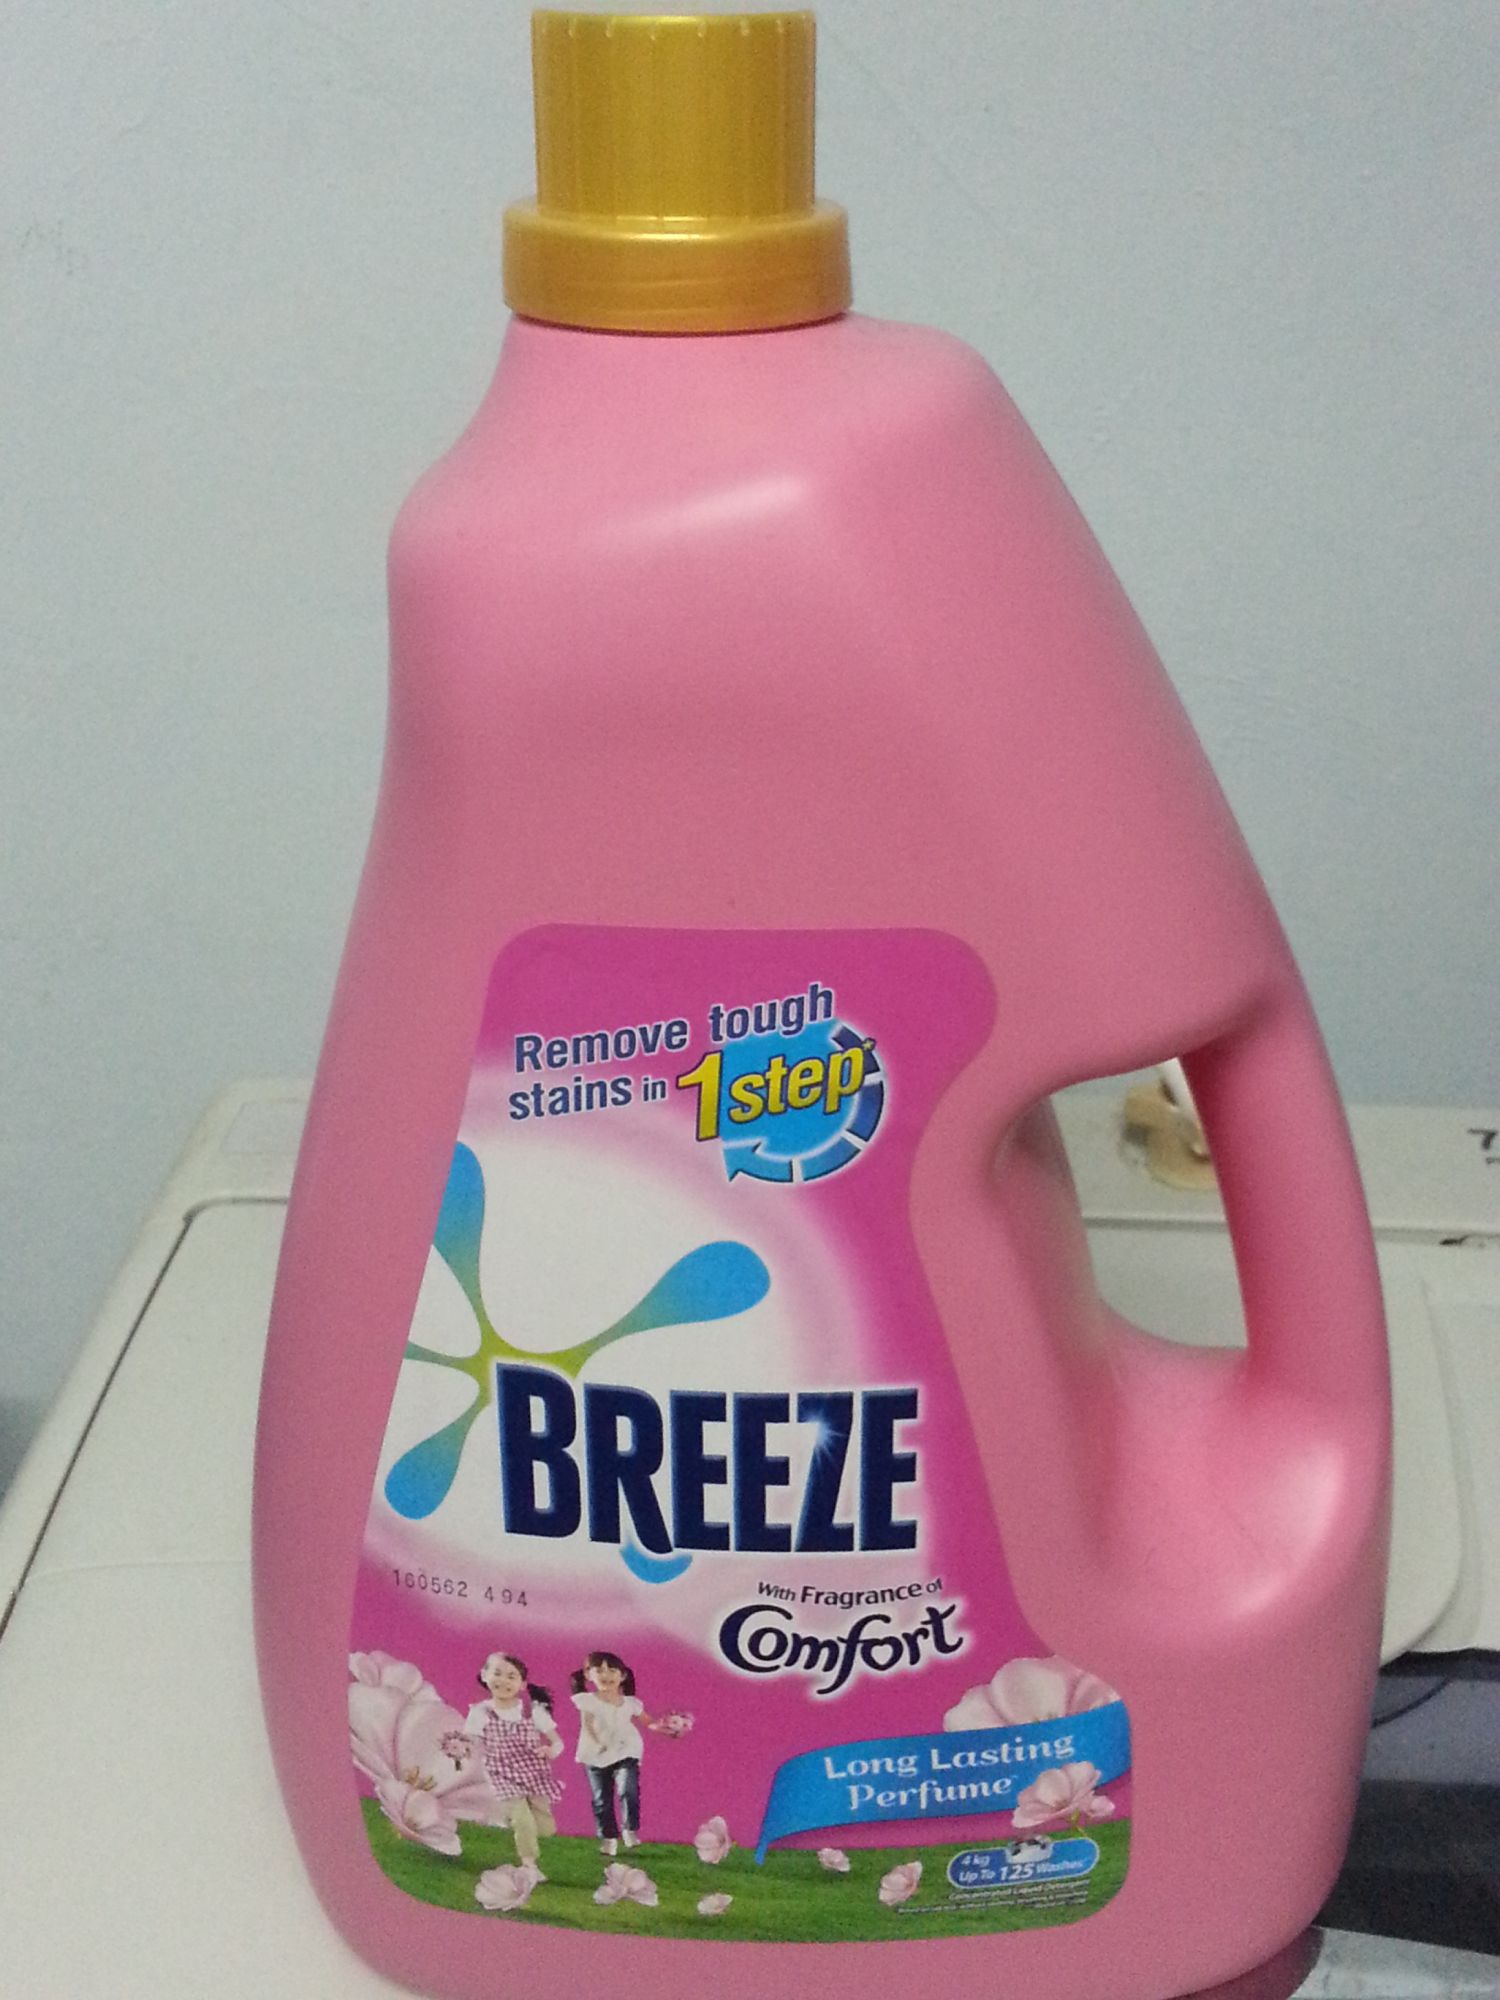 Breeze Liquid Fragrance of Comfort reviews